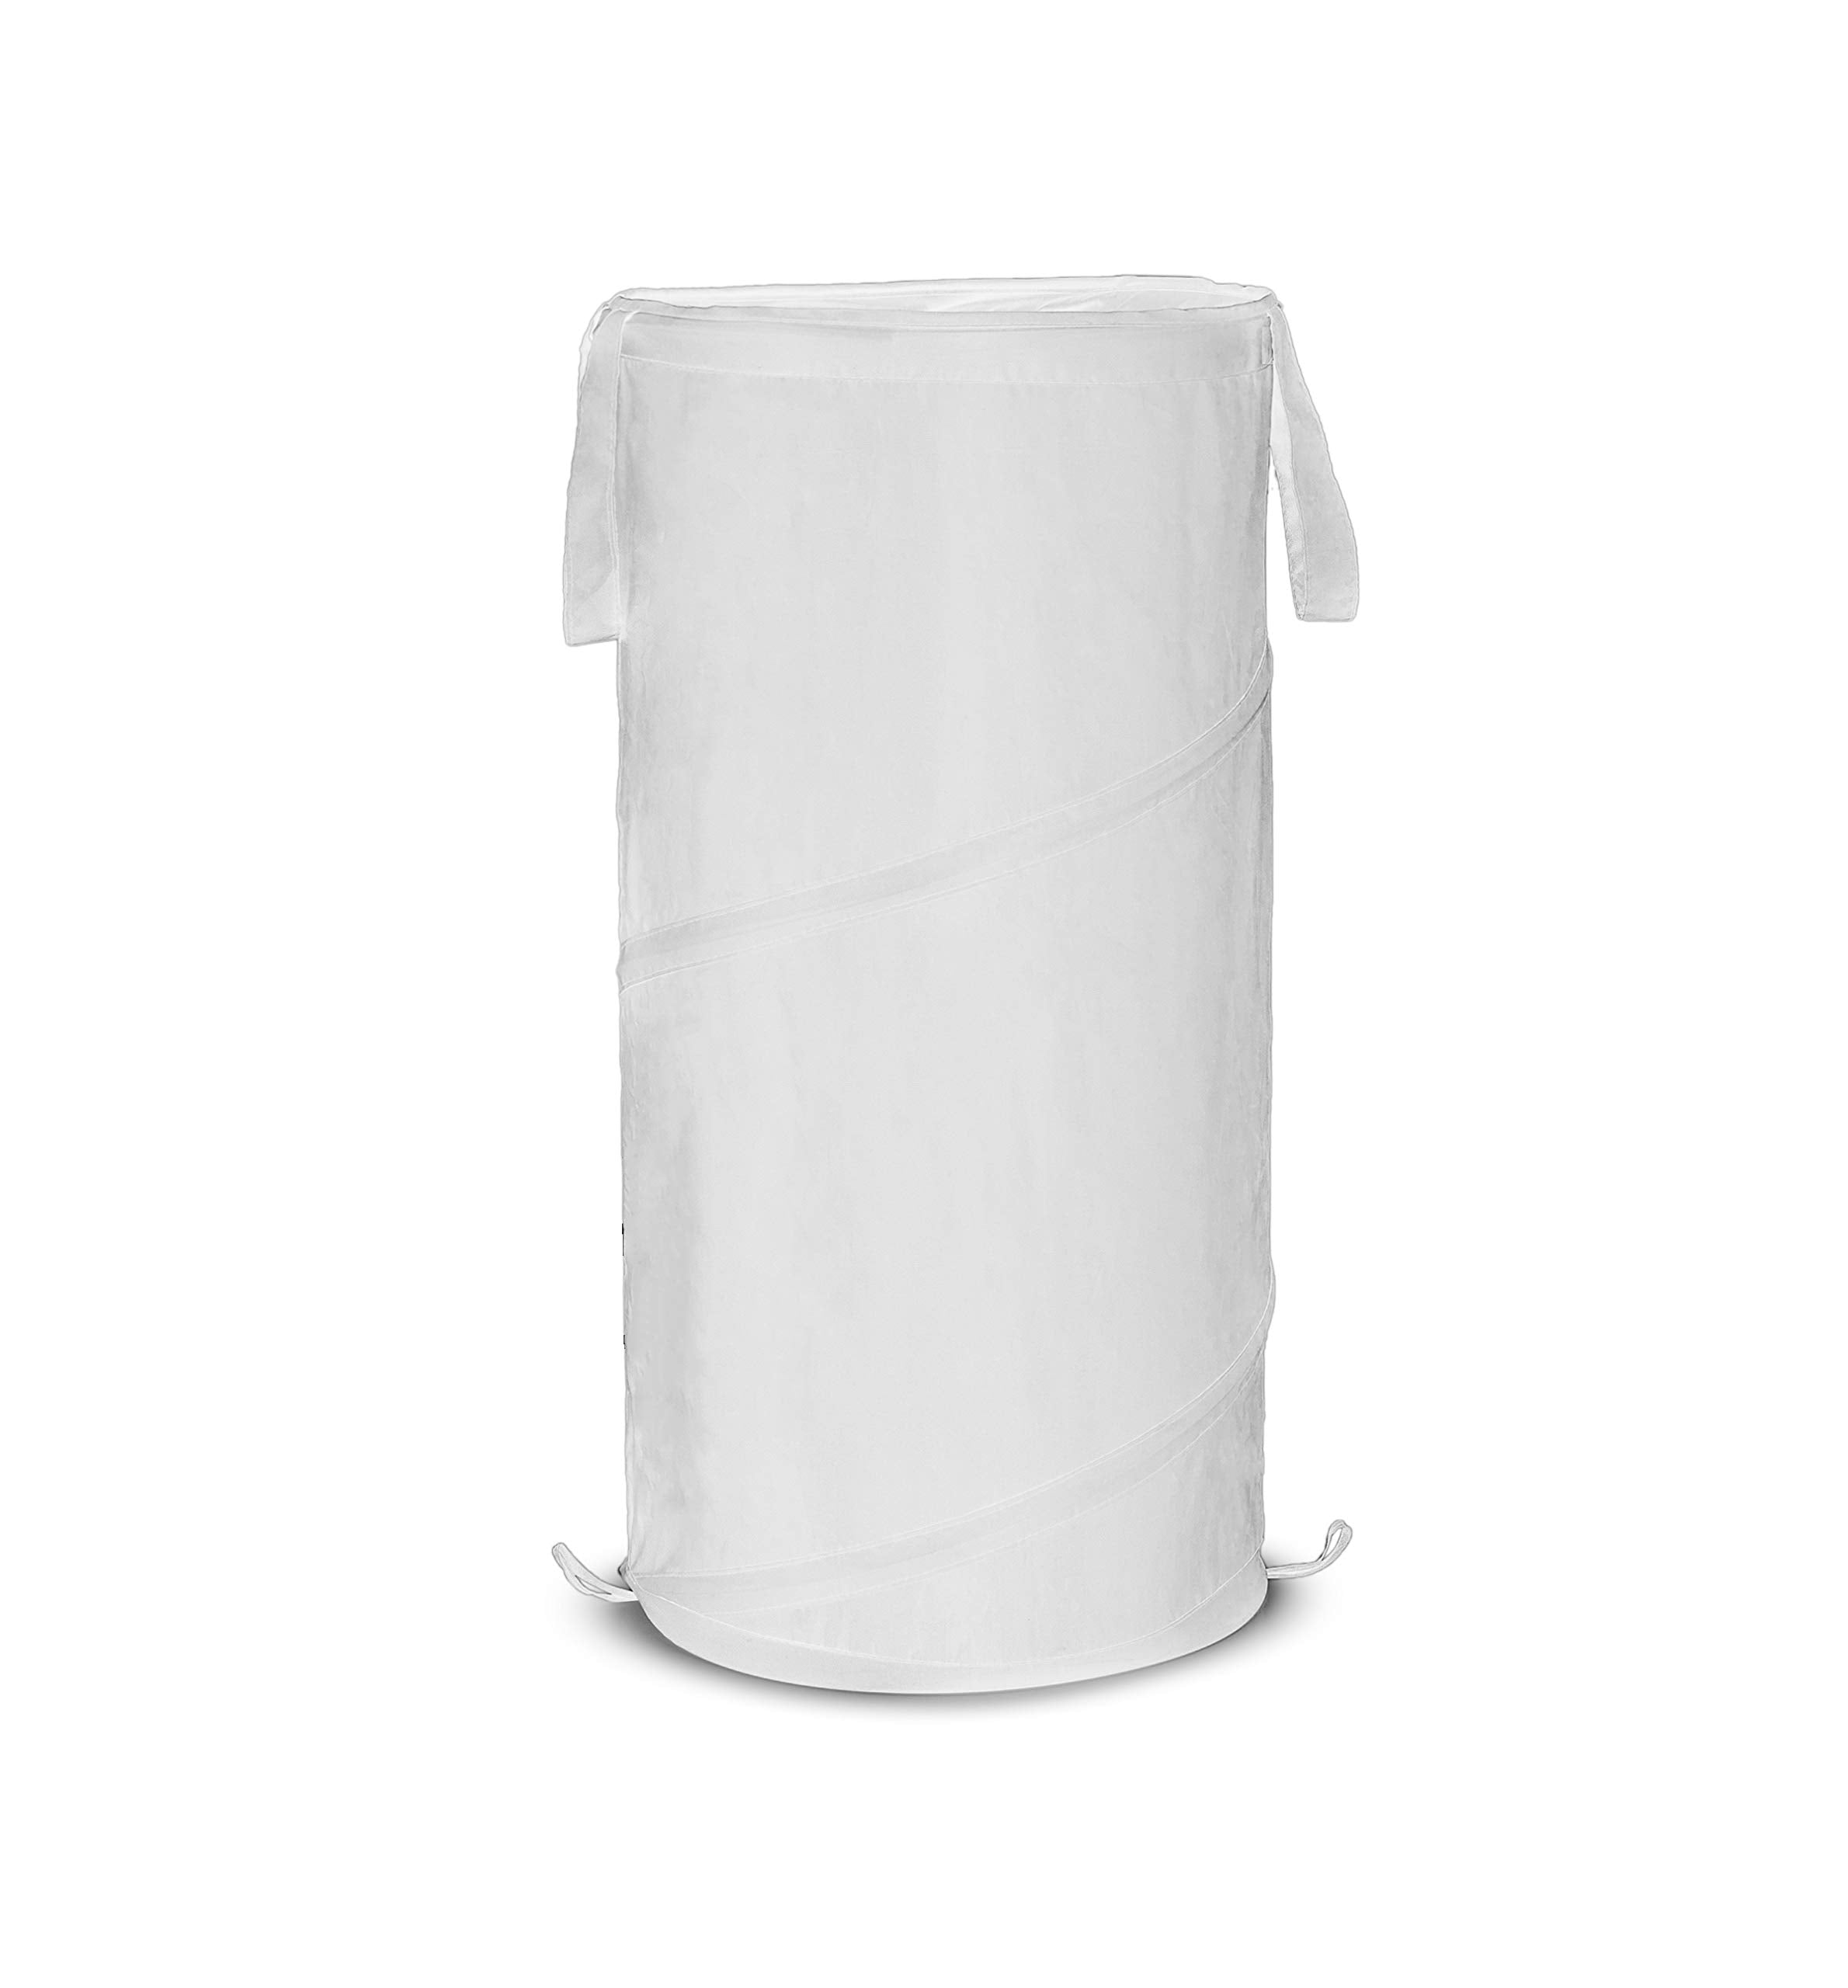 Pop-Up Slim Spiral Laundry Hamper Bag Polyester - 25 Inch - Smart Design® 7